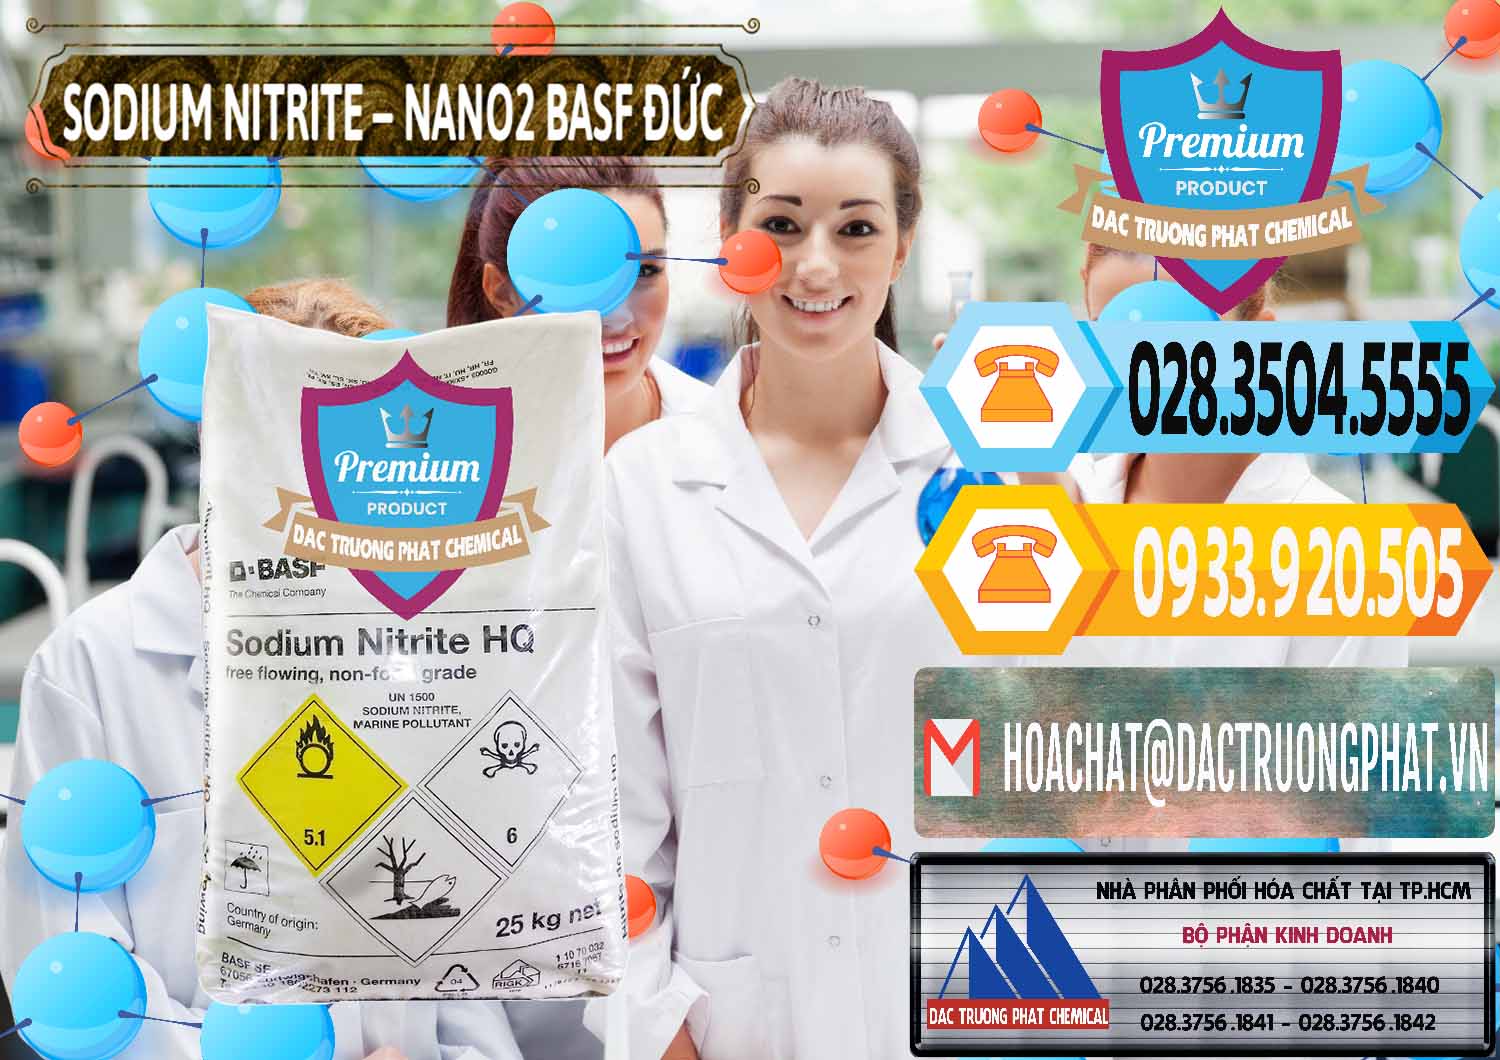 Phân phối _ bán Sodium Nitrite - NANO2 Đức BASF Germany - 0148 - Cty phân phối _ cung cấp hóa chất tại TP.HCM - hoachattayrua.net